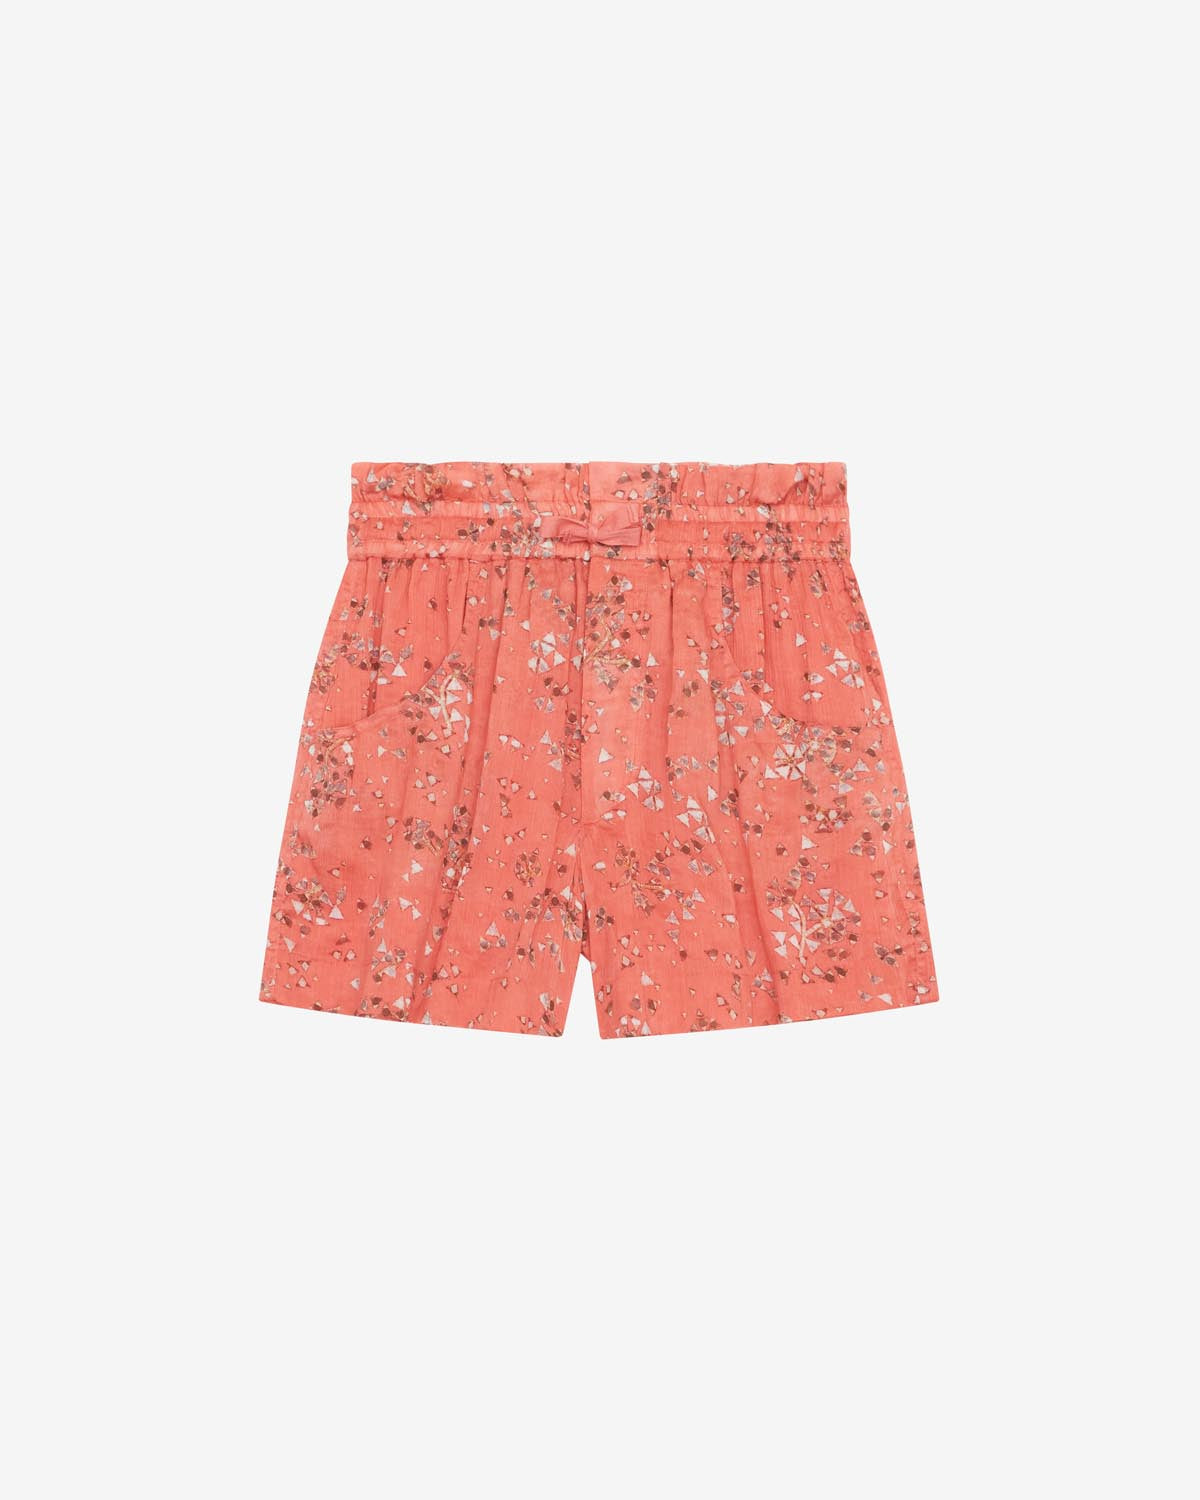 Ceyane shorts Woman Shell pink 1